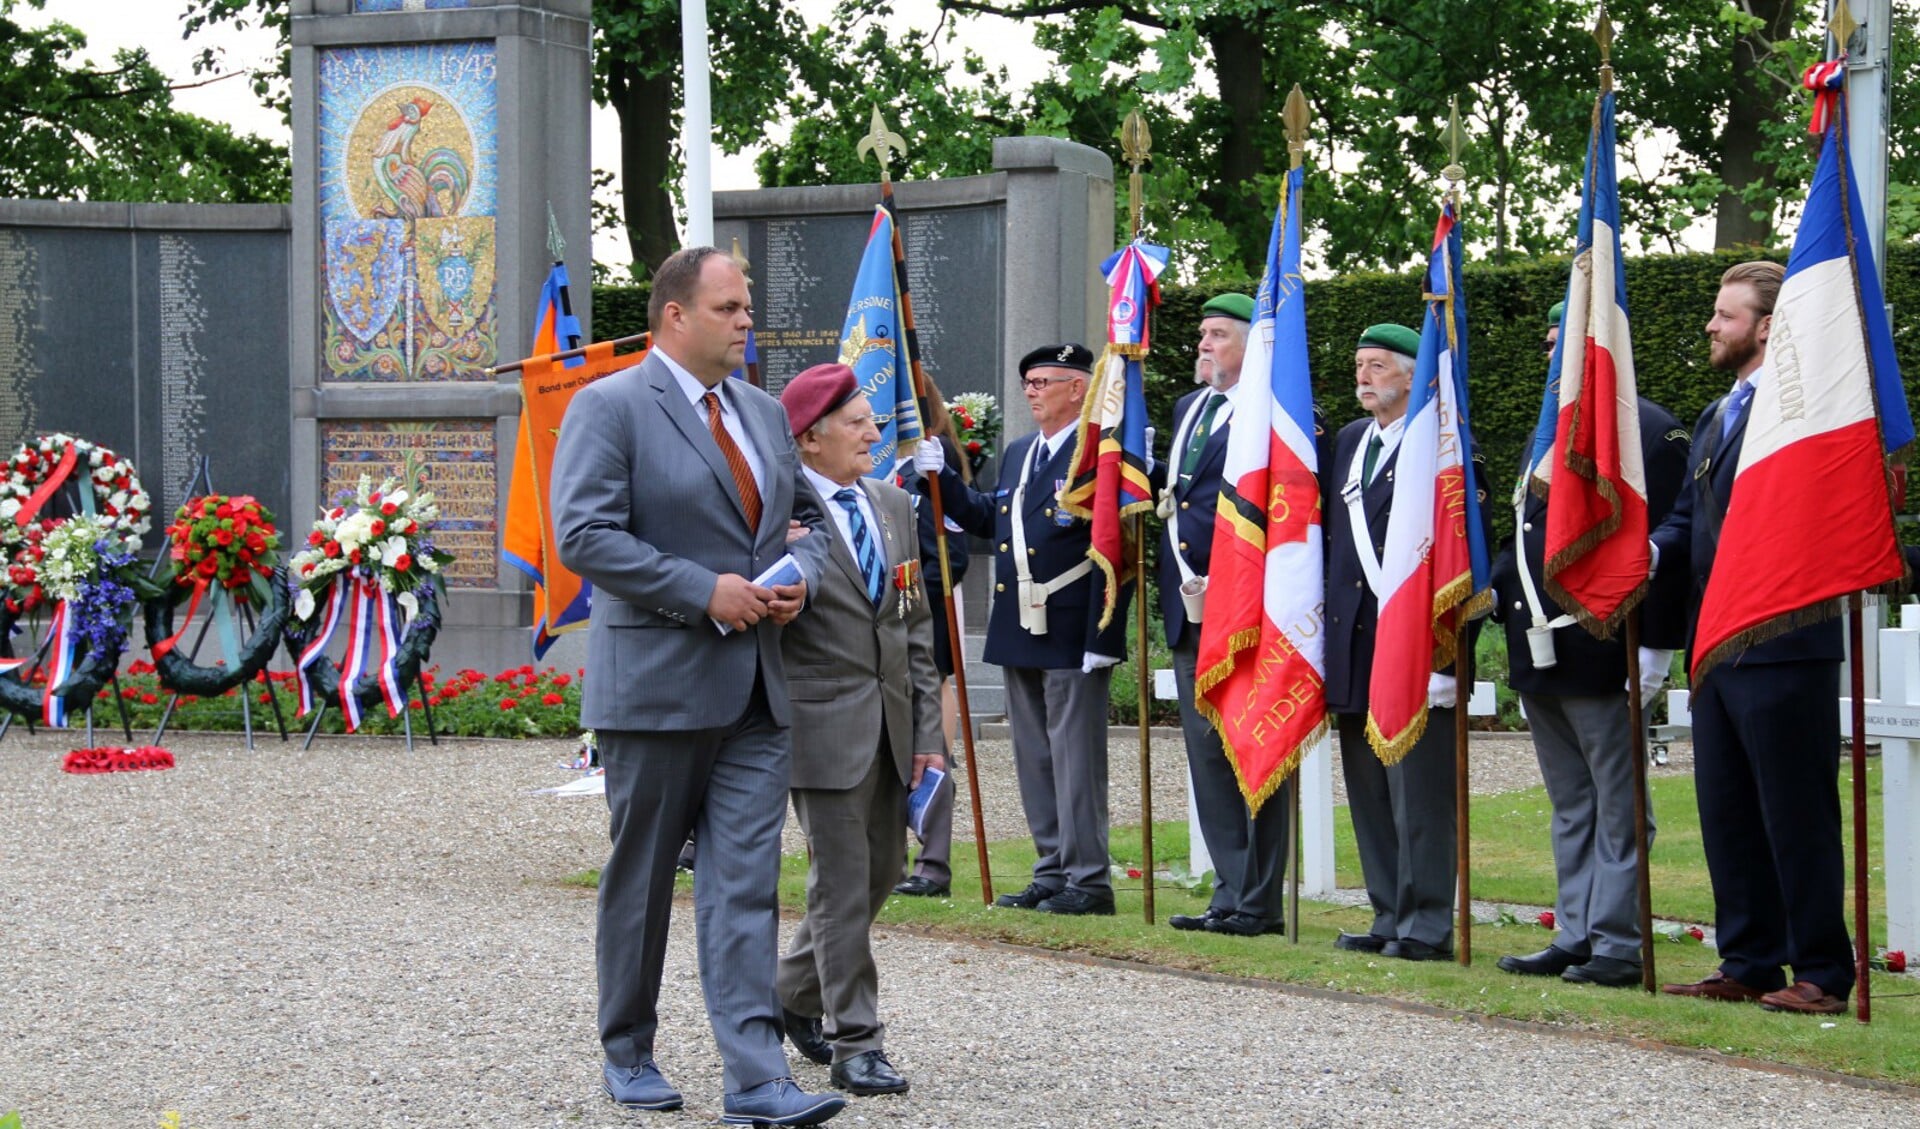 Veteraan Maurice le Noury hoopt de Franse herdenking dit jaar weer te bezoeken.